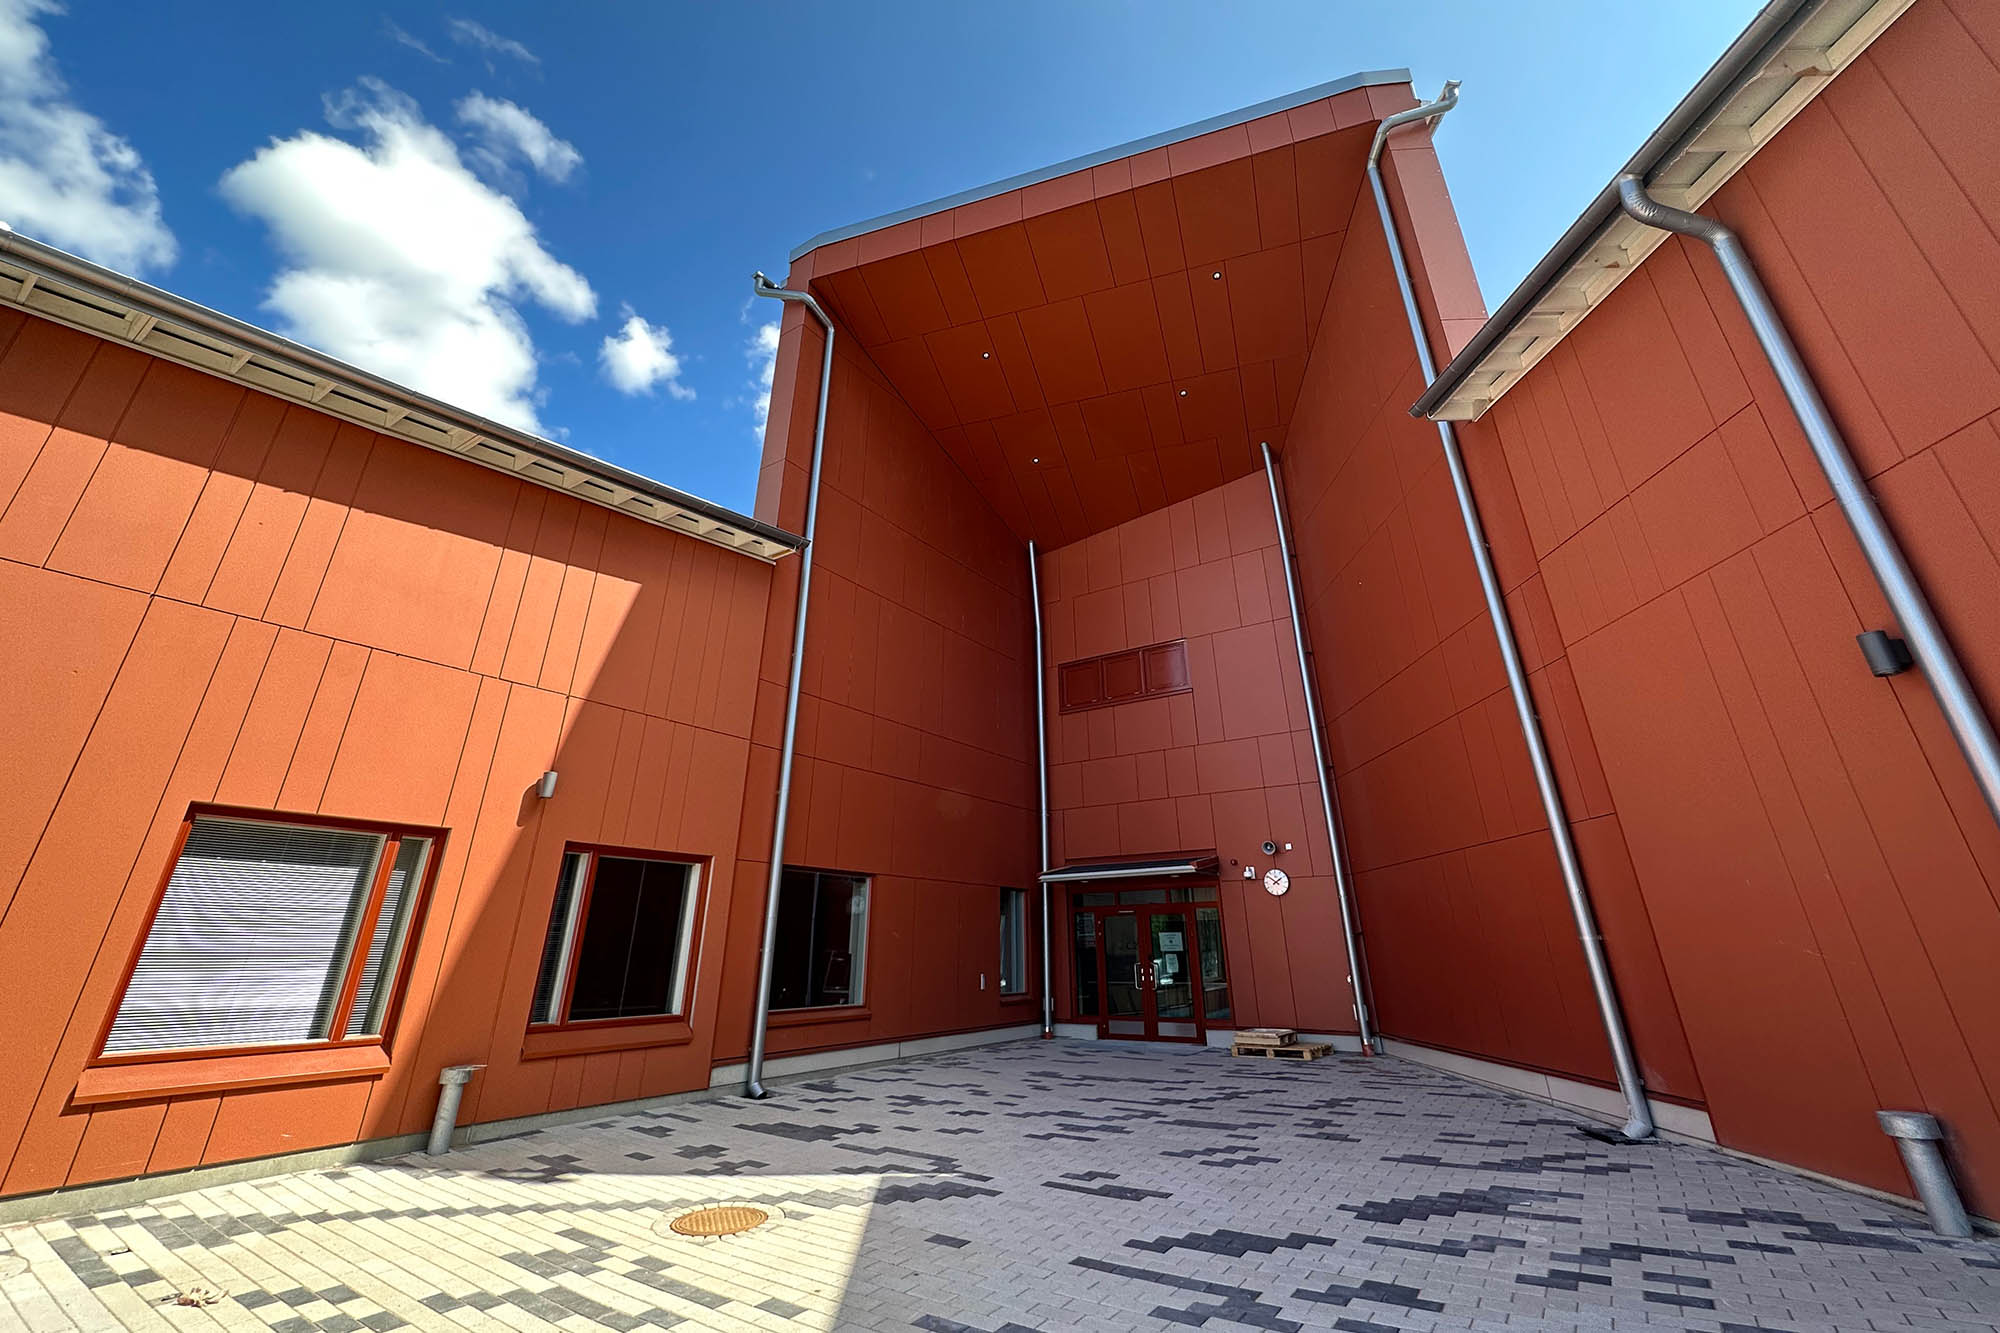 Raksystems vastasi Turengin koulukeskus Välkyn rakentamisen projektinjohdosta, sähkövalvonnasta sekä kosteuden- ja puhtaudenhallinnasta.